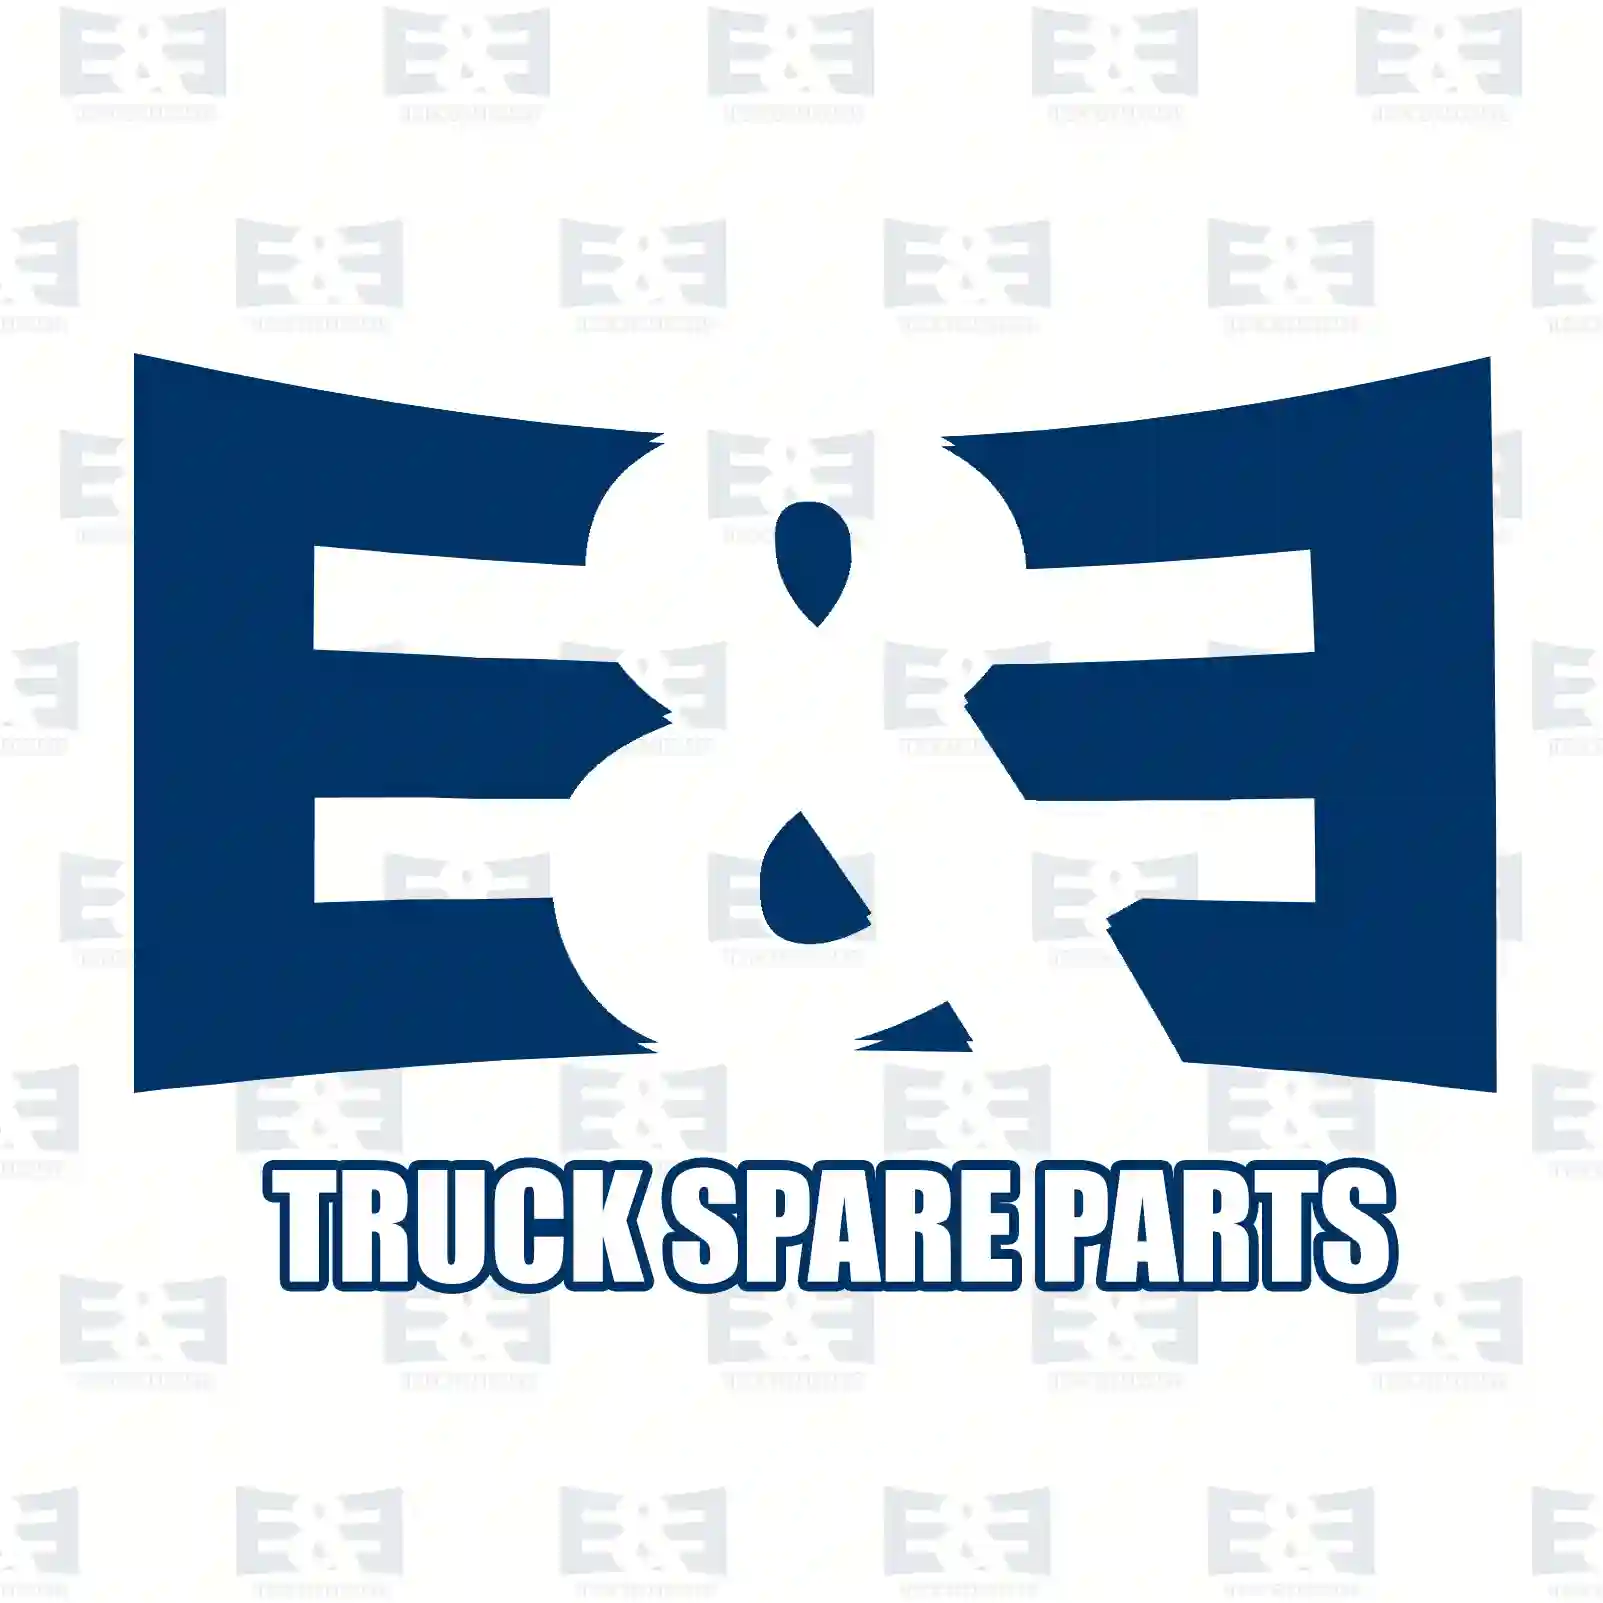 Cover, lateral, right, 2E2291644, 9438800936, 94388009367C72 ||  2E2291644 E&E Truck Spare Parts | Truck Spare Parts, Auotomotive Spare Parts Cover, lateral, right, 2E2291644, 9438800936, 94388009367C72 ||  2E2291644 E&E Truck Spare Parts | Truck Spare Parts, Auotomotive Spare Parts